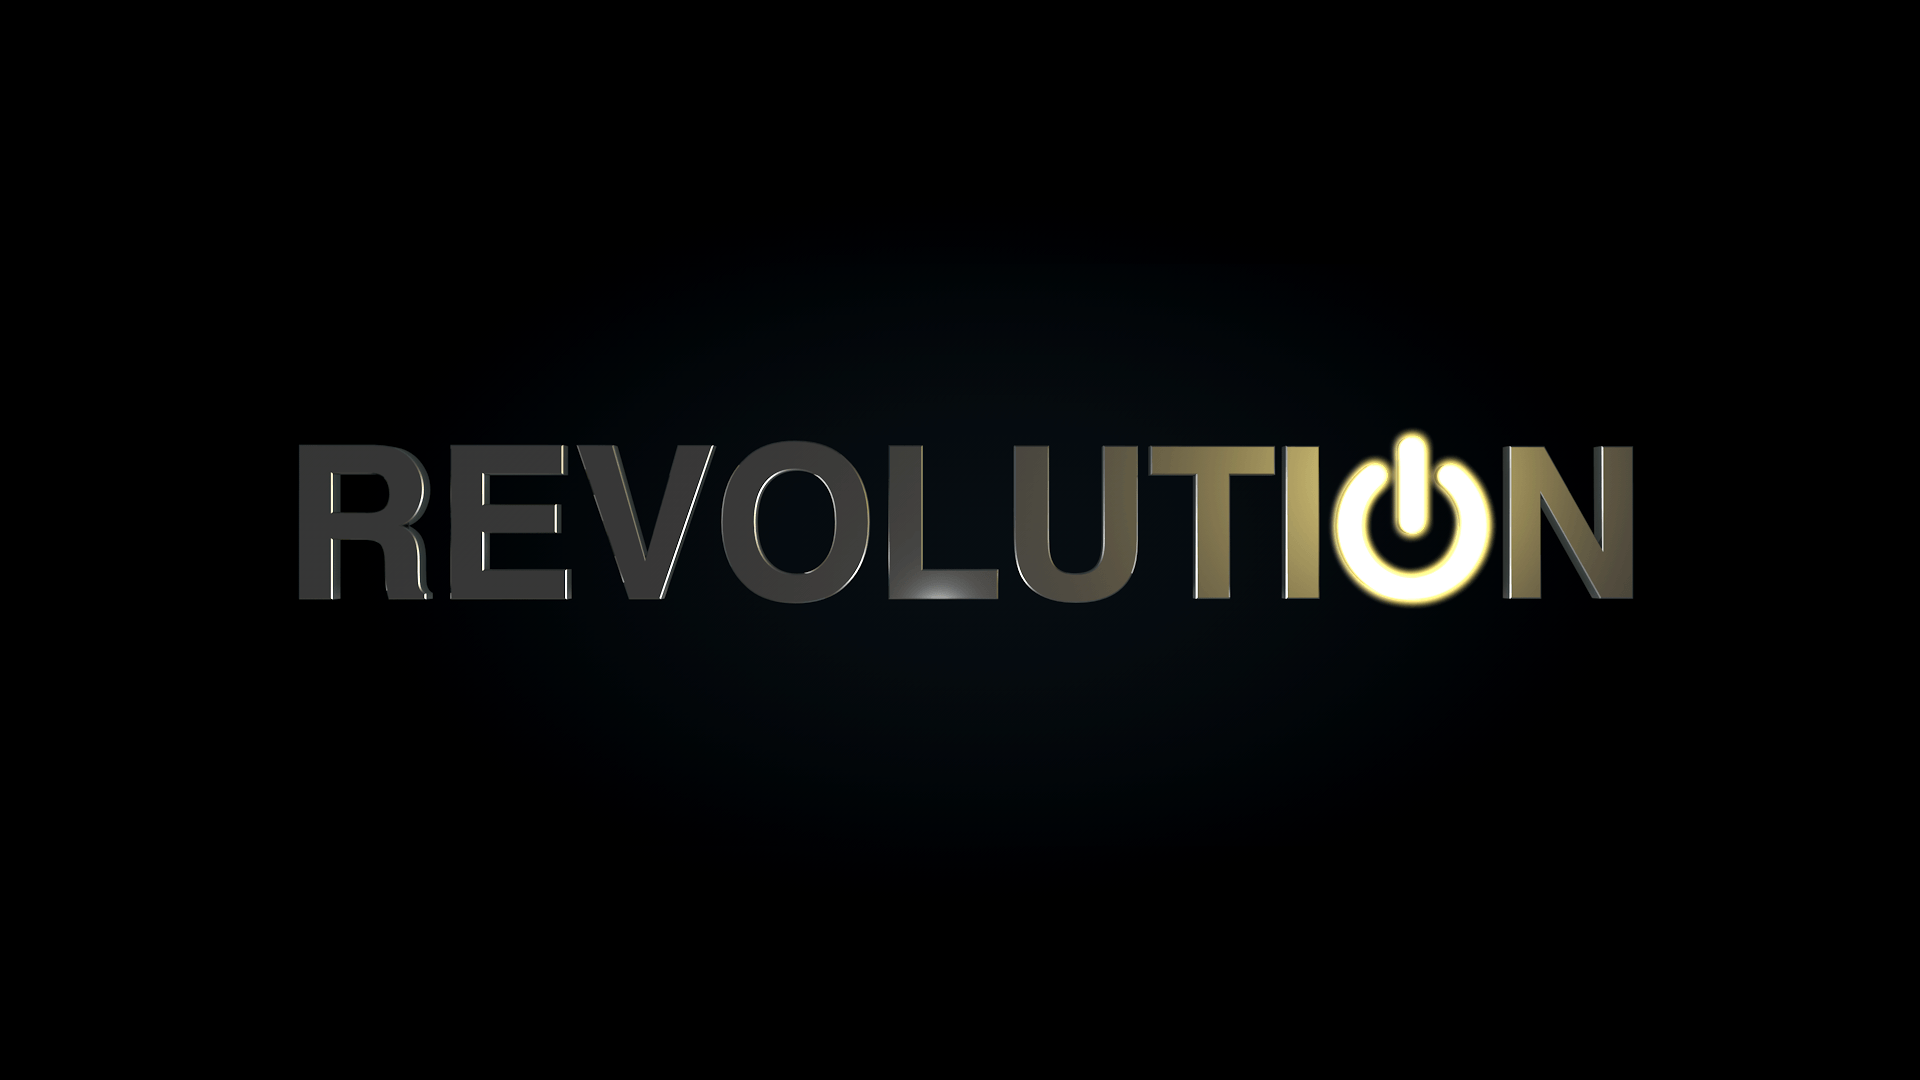 Revolution HD Wallpaper